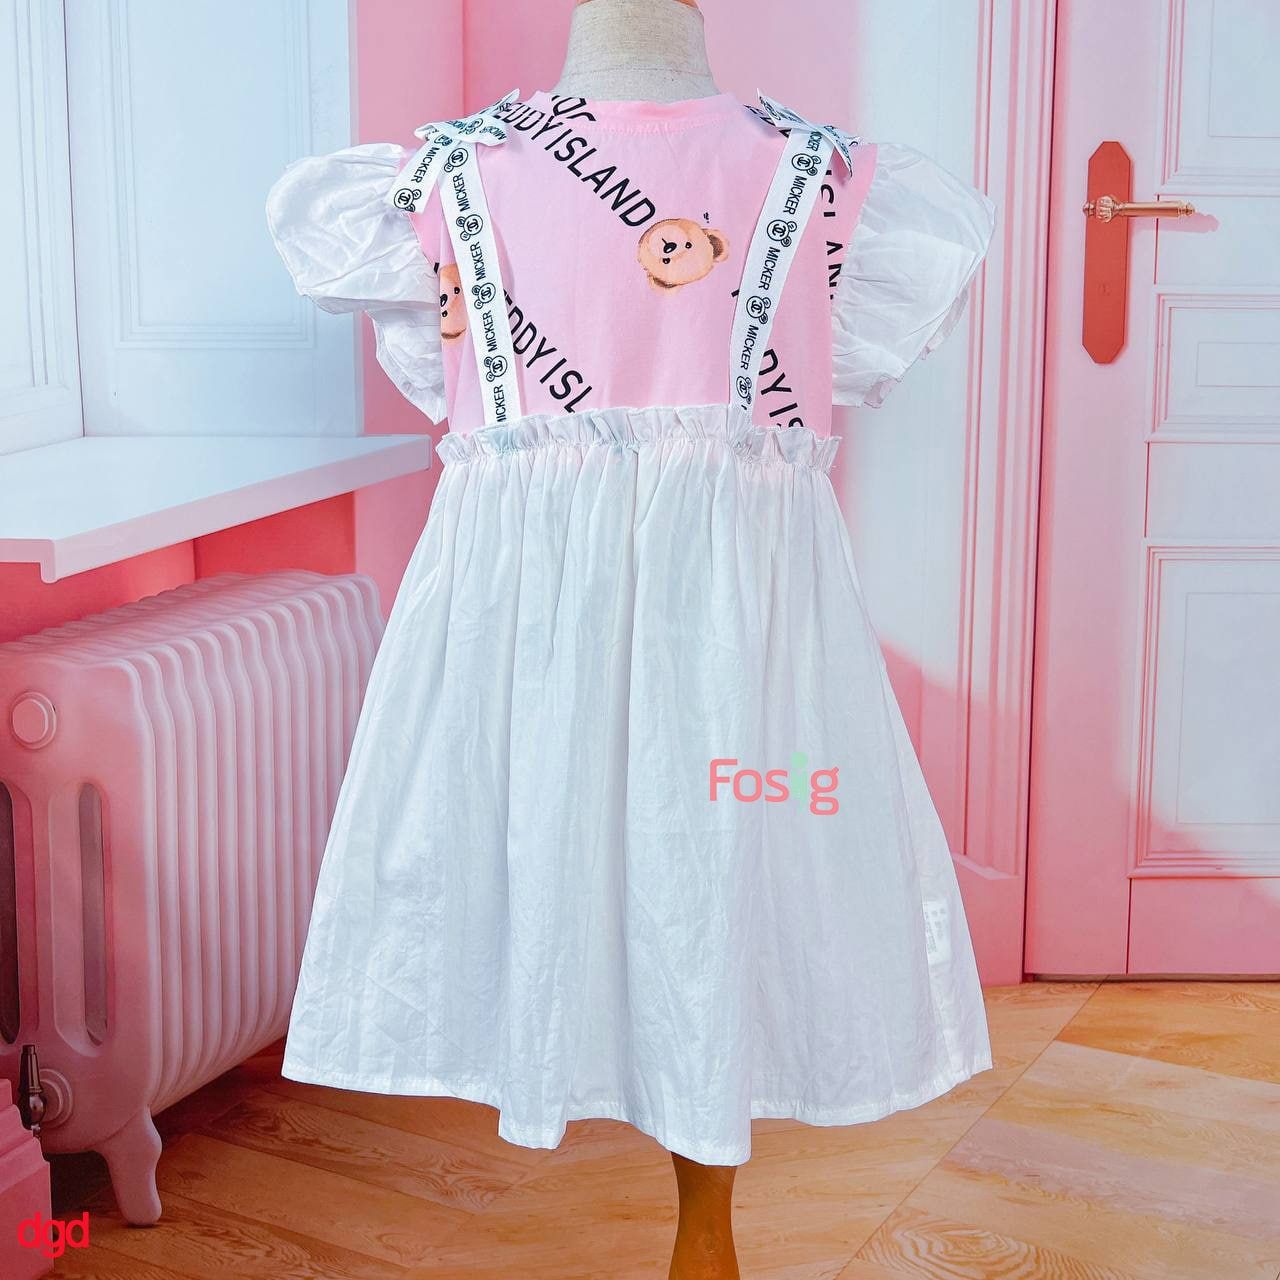  [16-30kg] Đầm Tay Ngắn Bé Gái - Hồng Teddyisland T152 